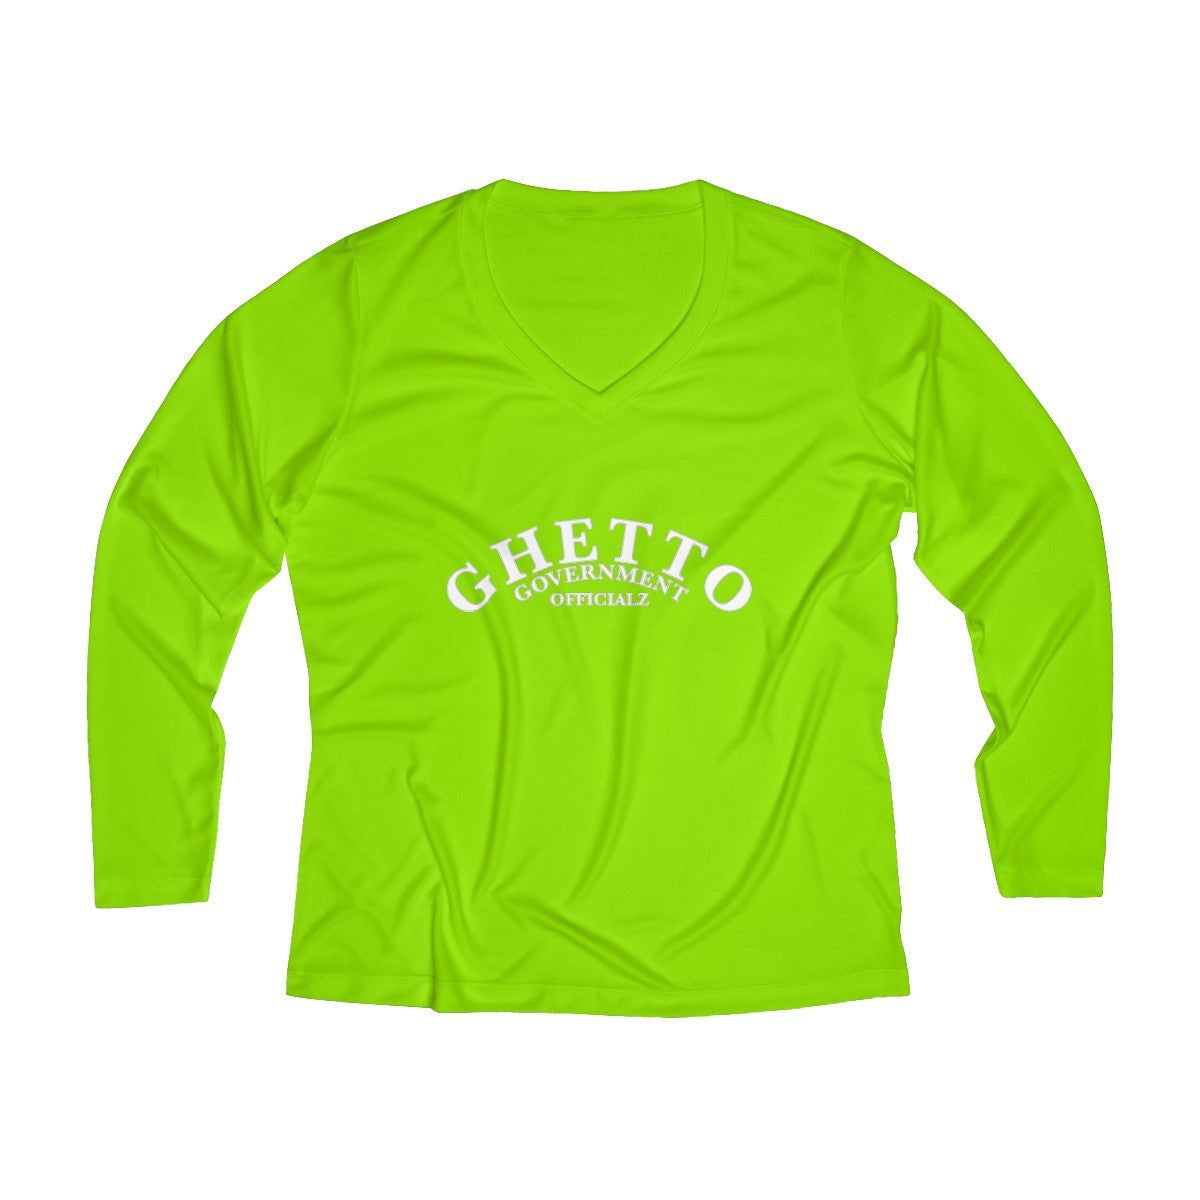 Ghetto Gov't Officialz Designer Logo Women's Long Sleeve Performance V-neck Tee HeavenRazah / Hell Razah